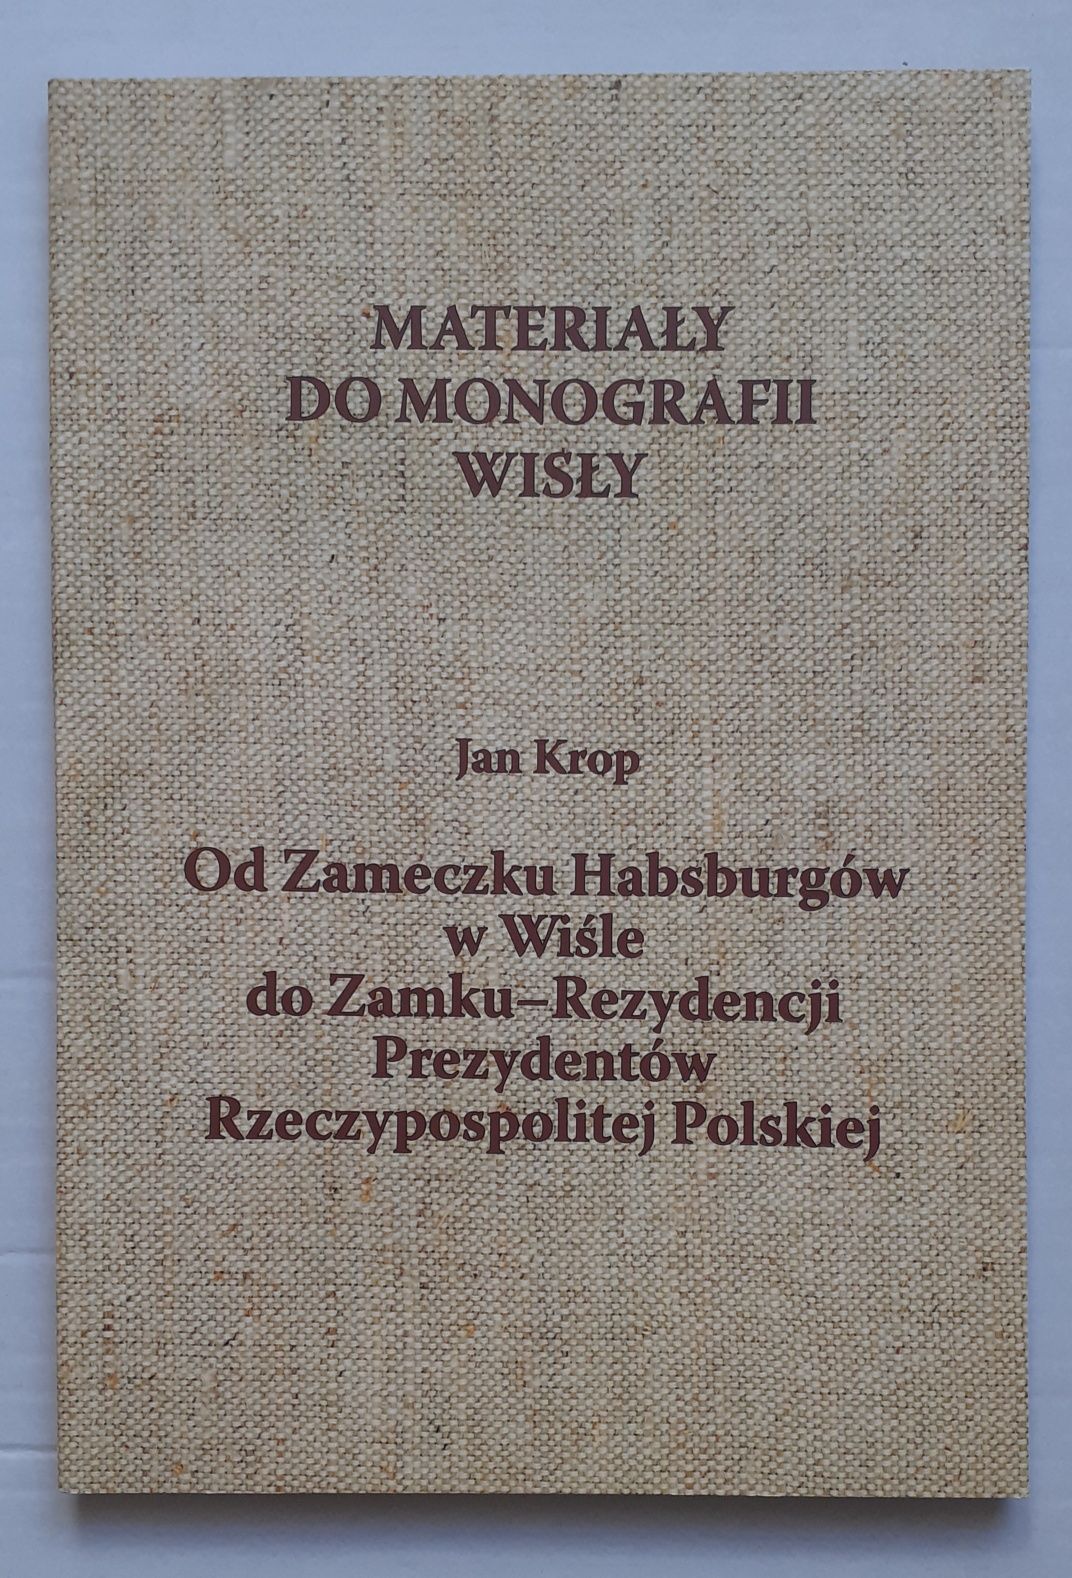 Materiały do monografii Wisły.